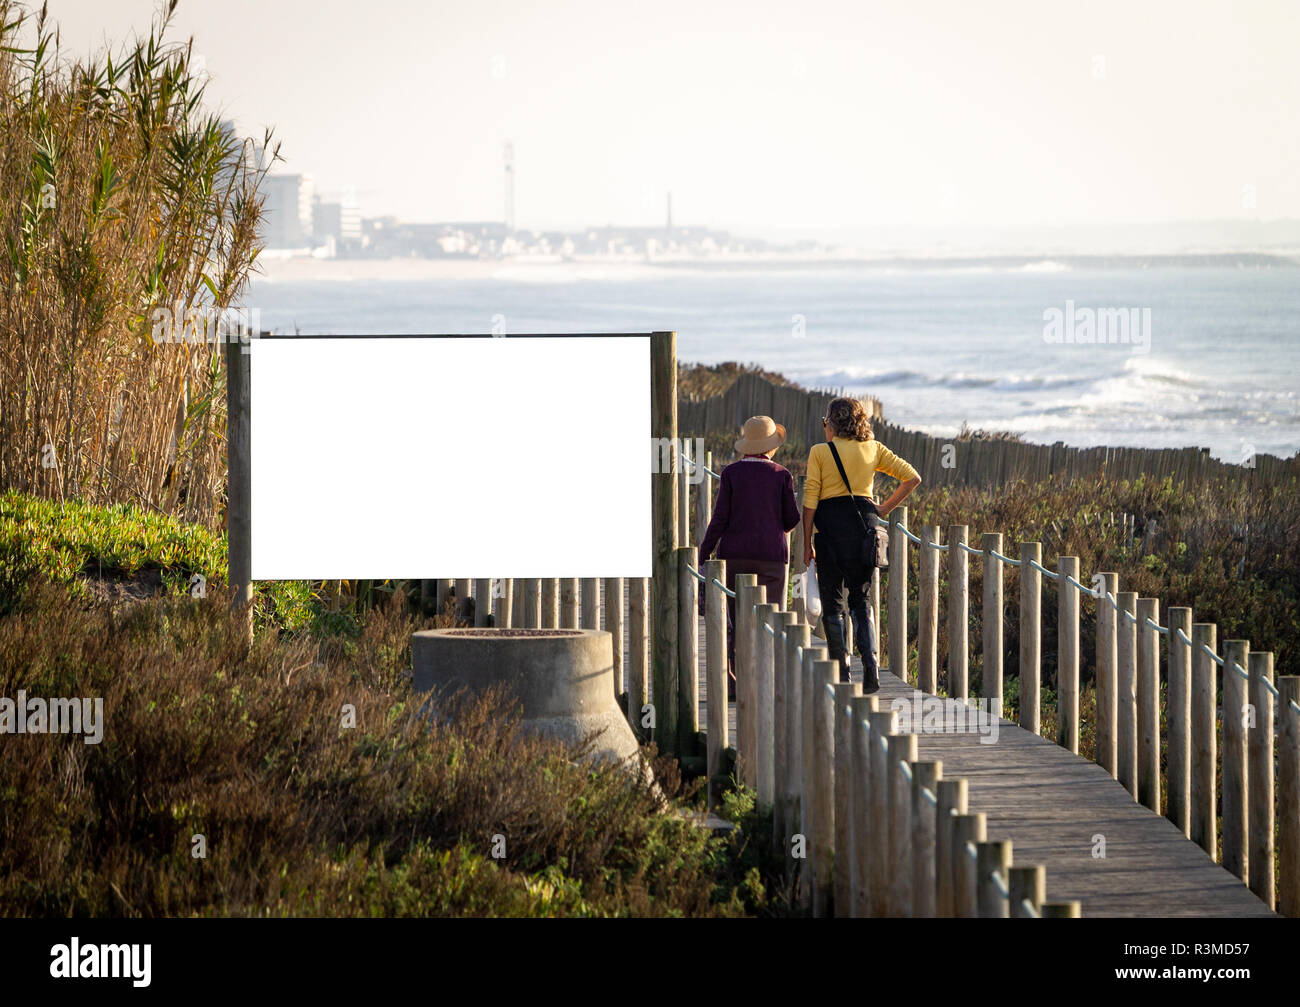 Two senior women walk by an advertisement billboard mockup on a boardwalk near the ocean. Rear view. Copy Space. Stock Photo